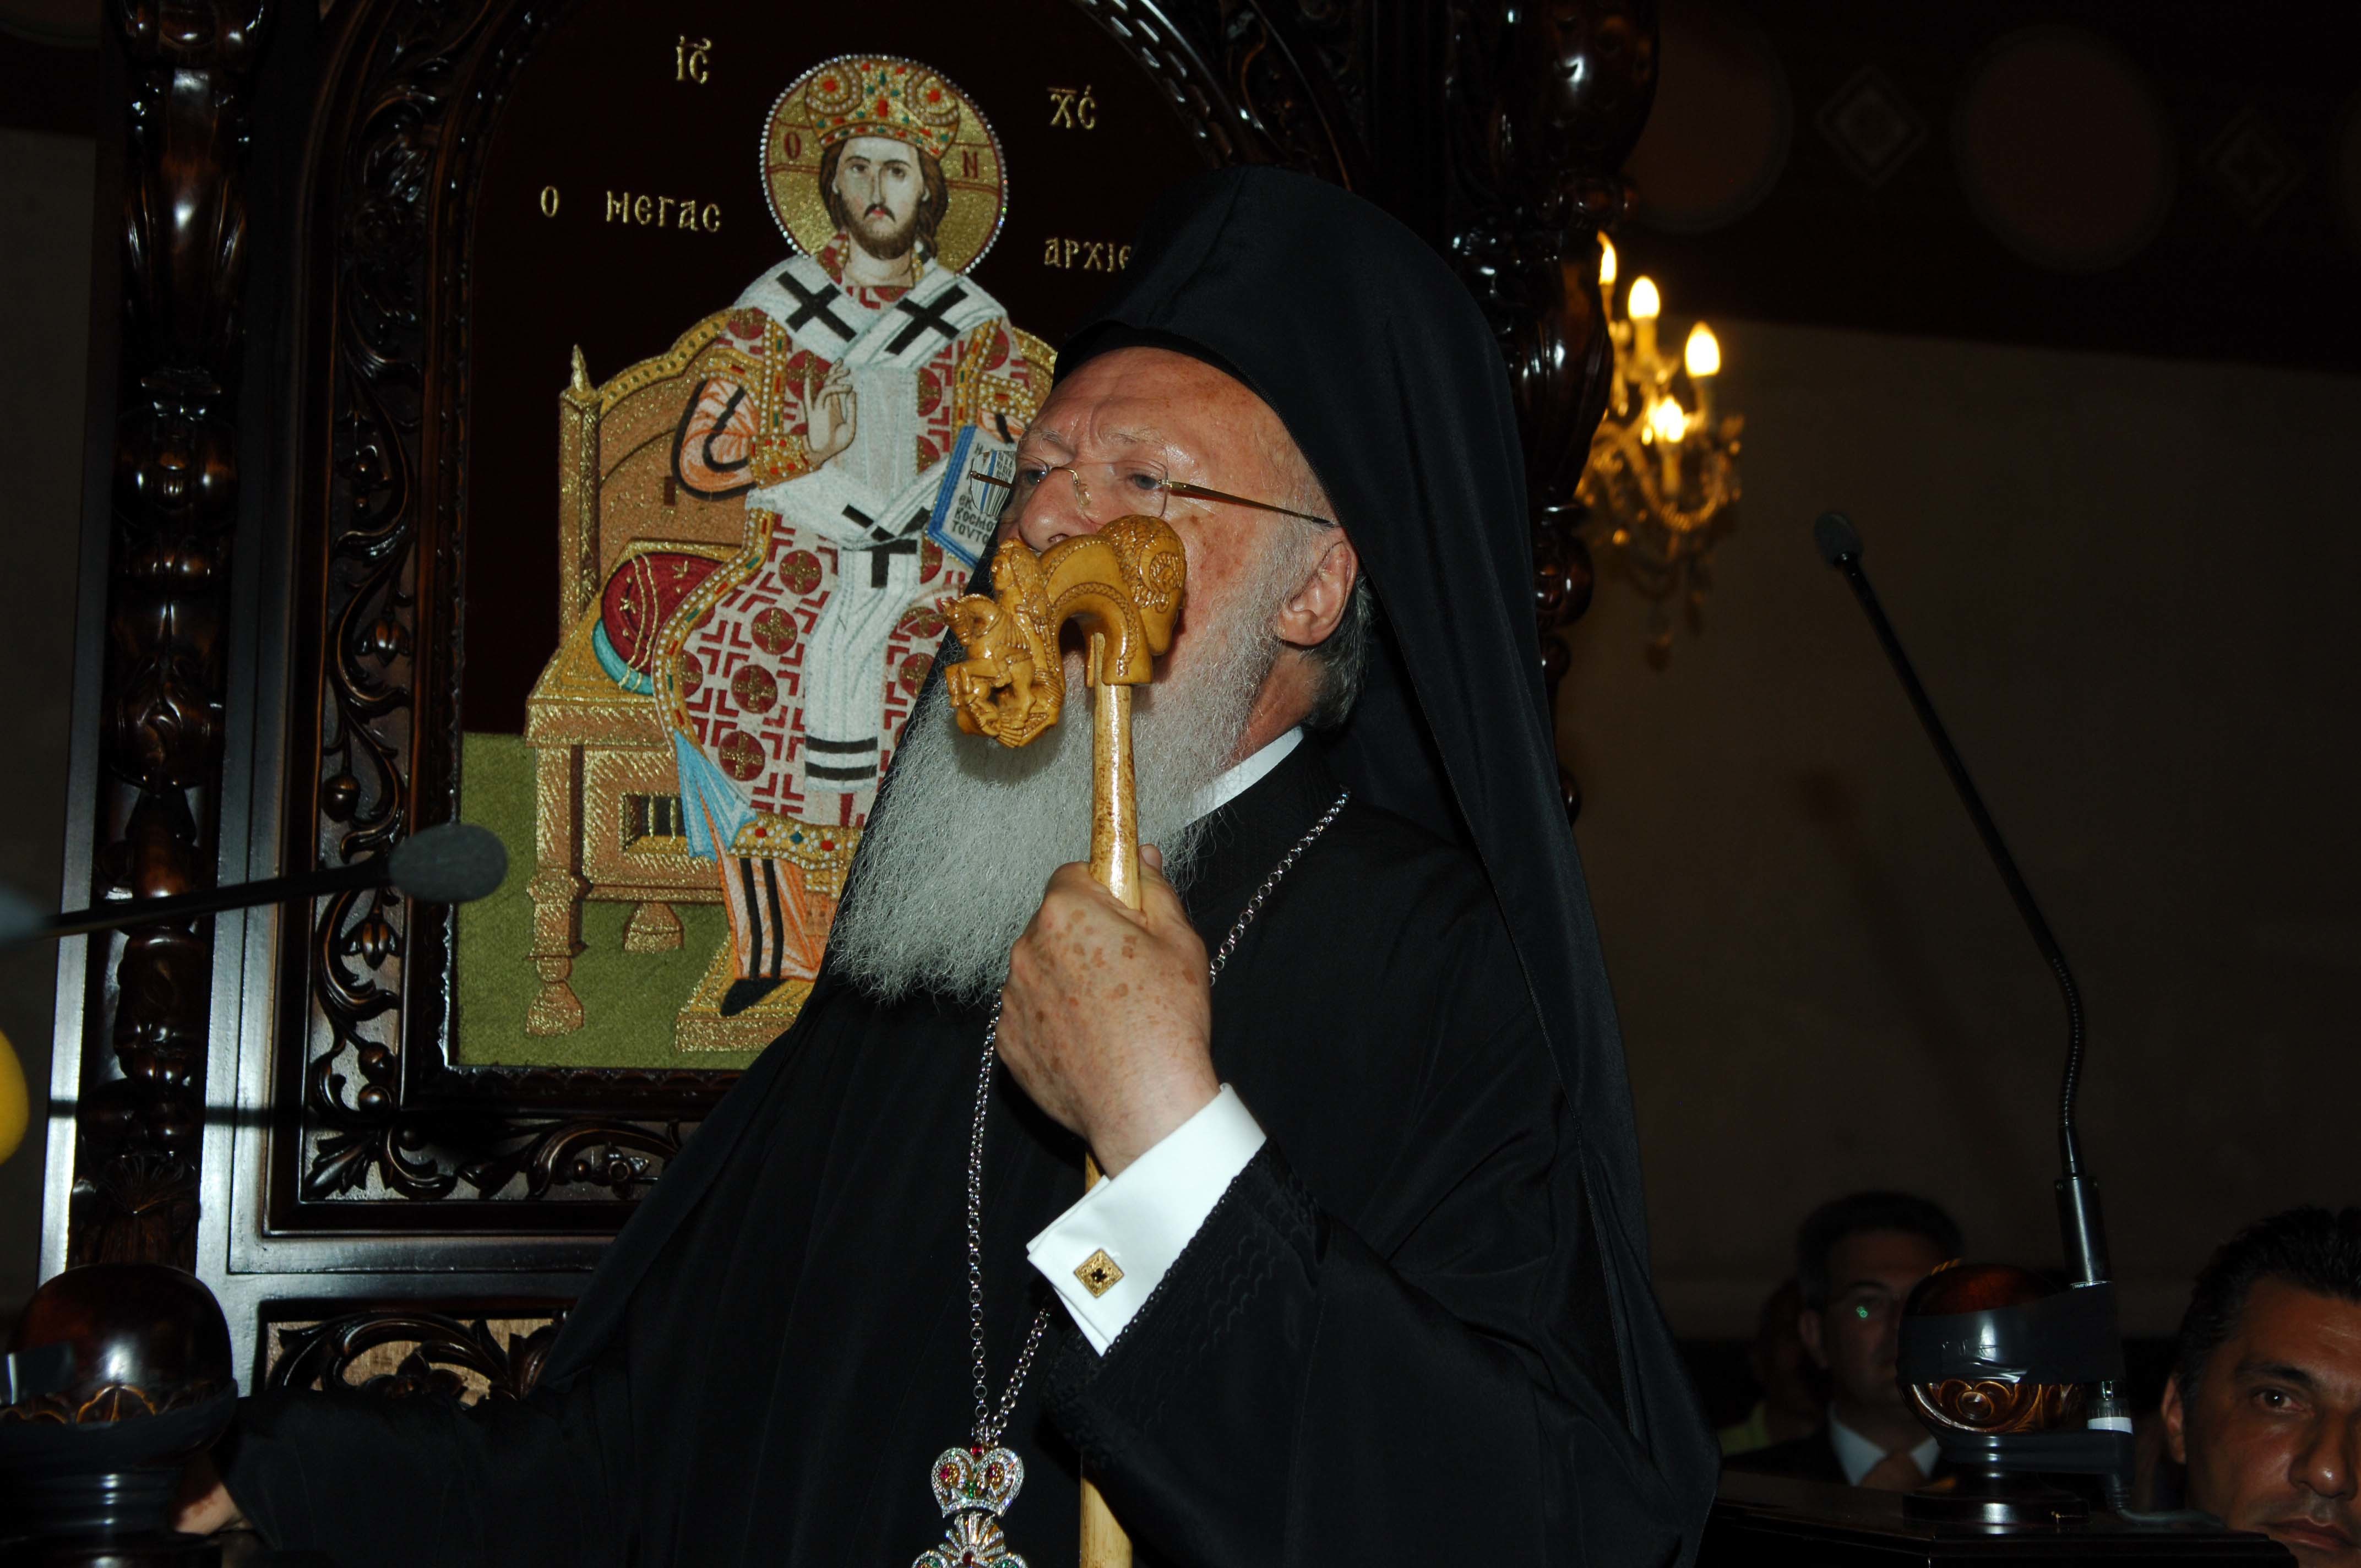 Οι τούρκοι αποκάλεσαν τον Πατριάρχη… Ρωμιό και όχι Οικουμενικό!